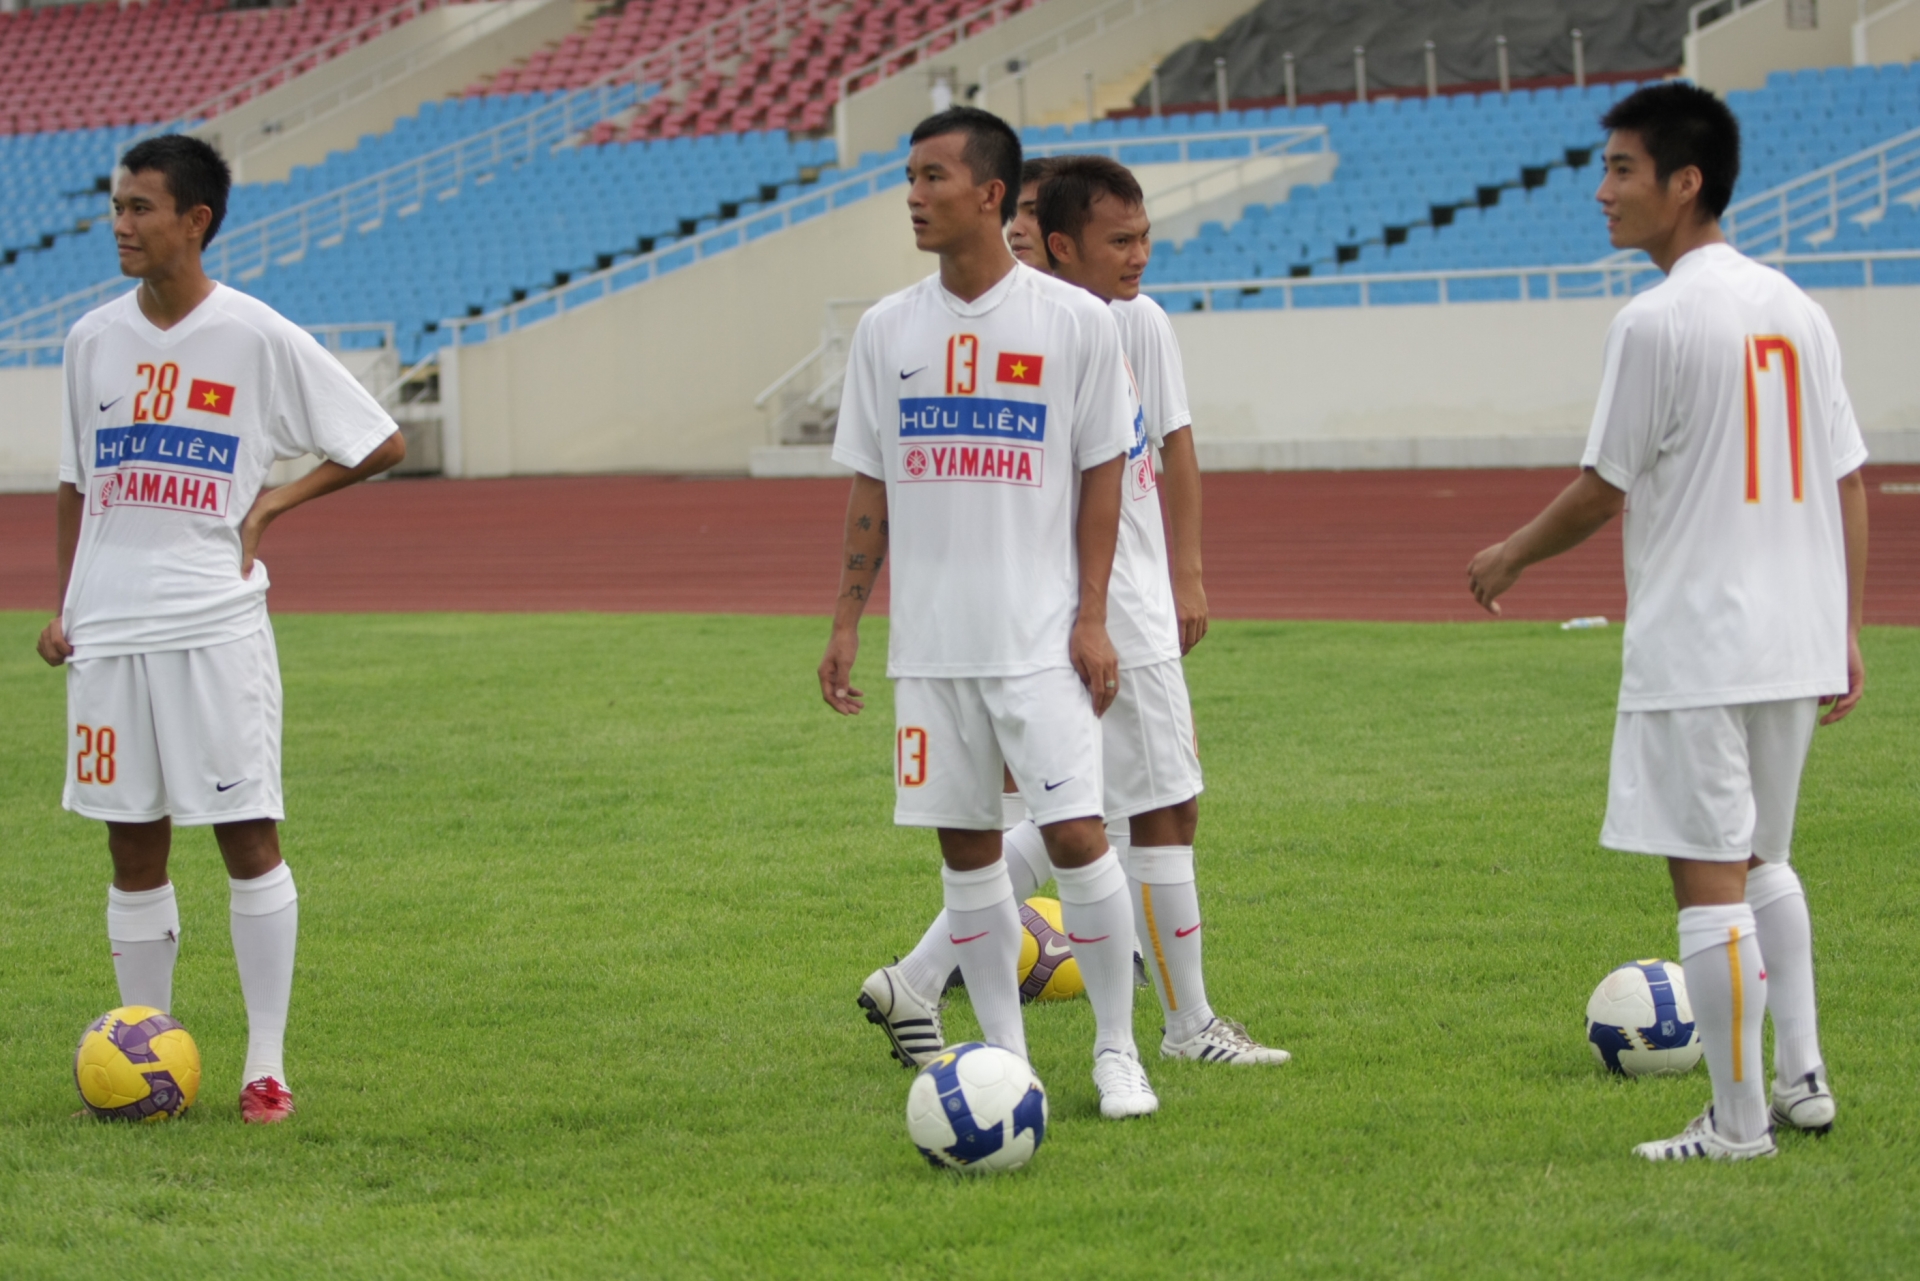 Mai Tiến Thành (số 13) thời còn khoác áo U23 Việt Nam. Hiện Tiến Thành là HLV trưởng U13 PVF.